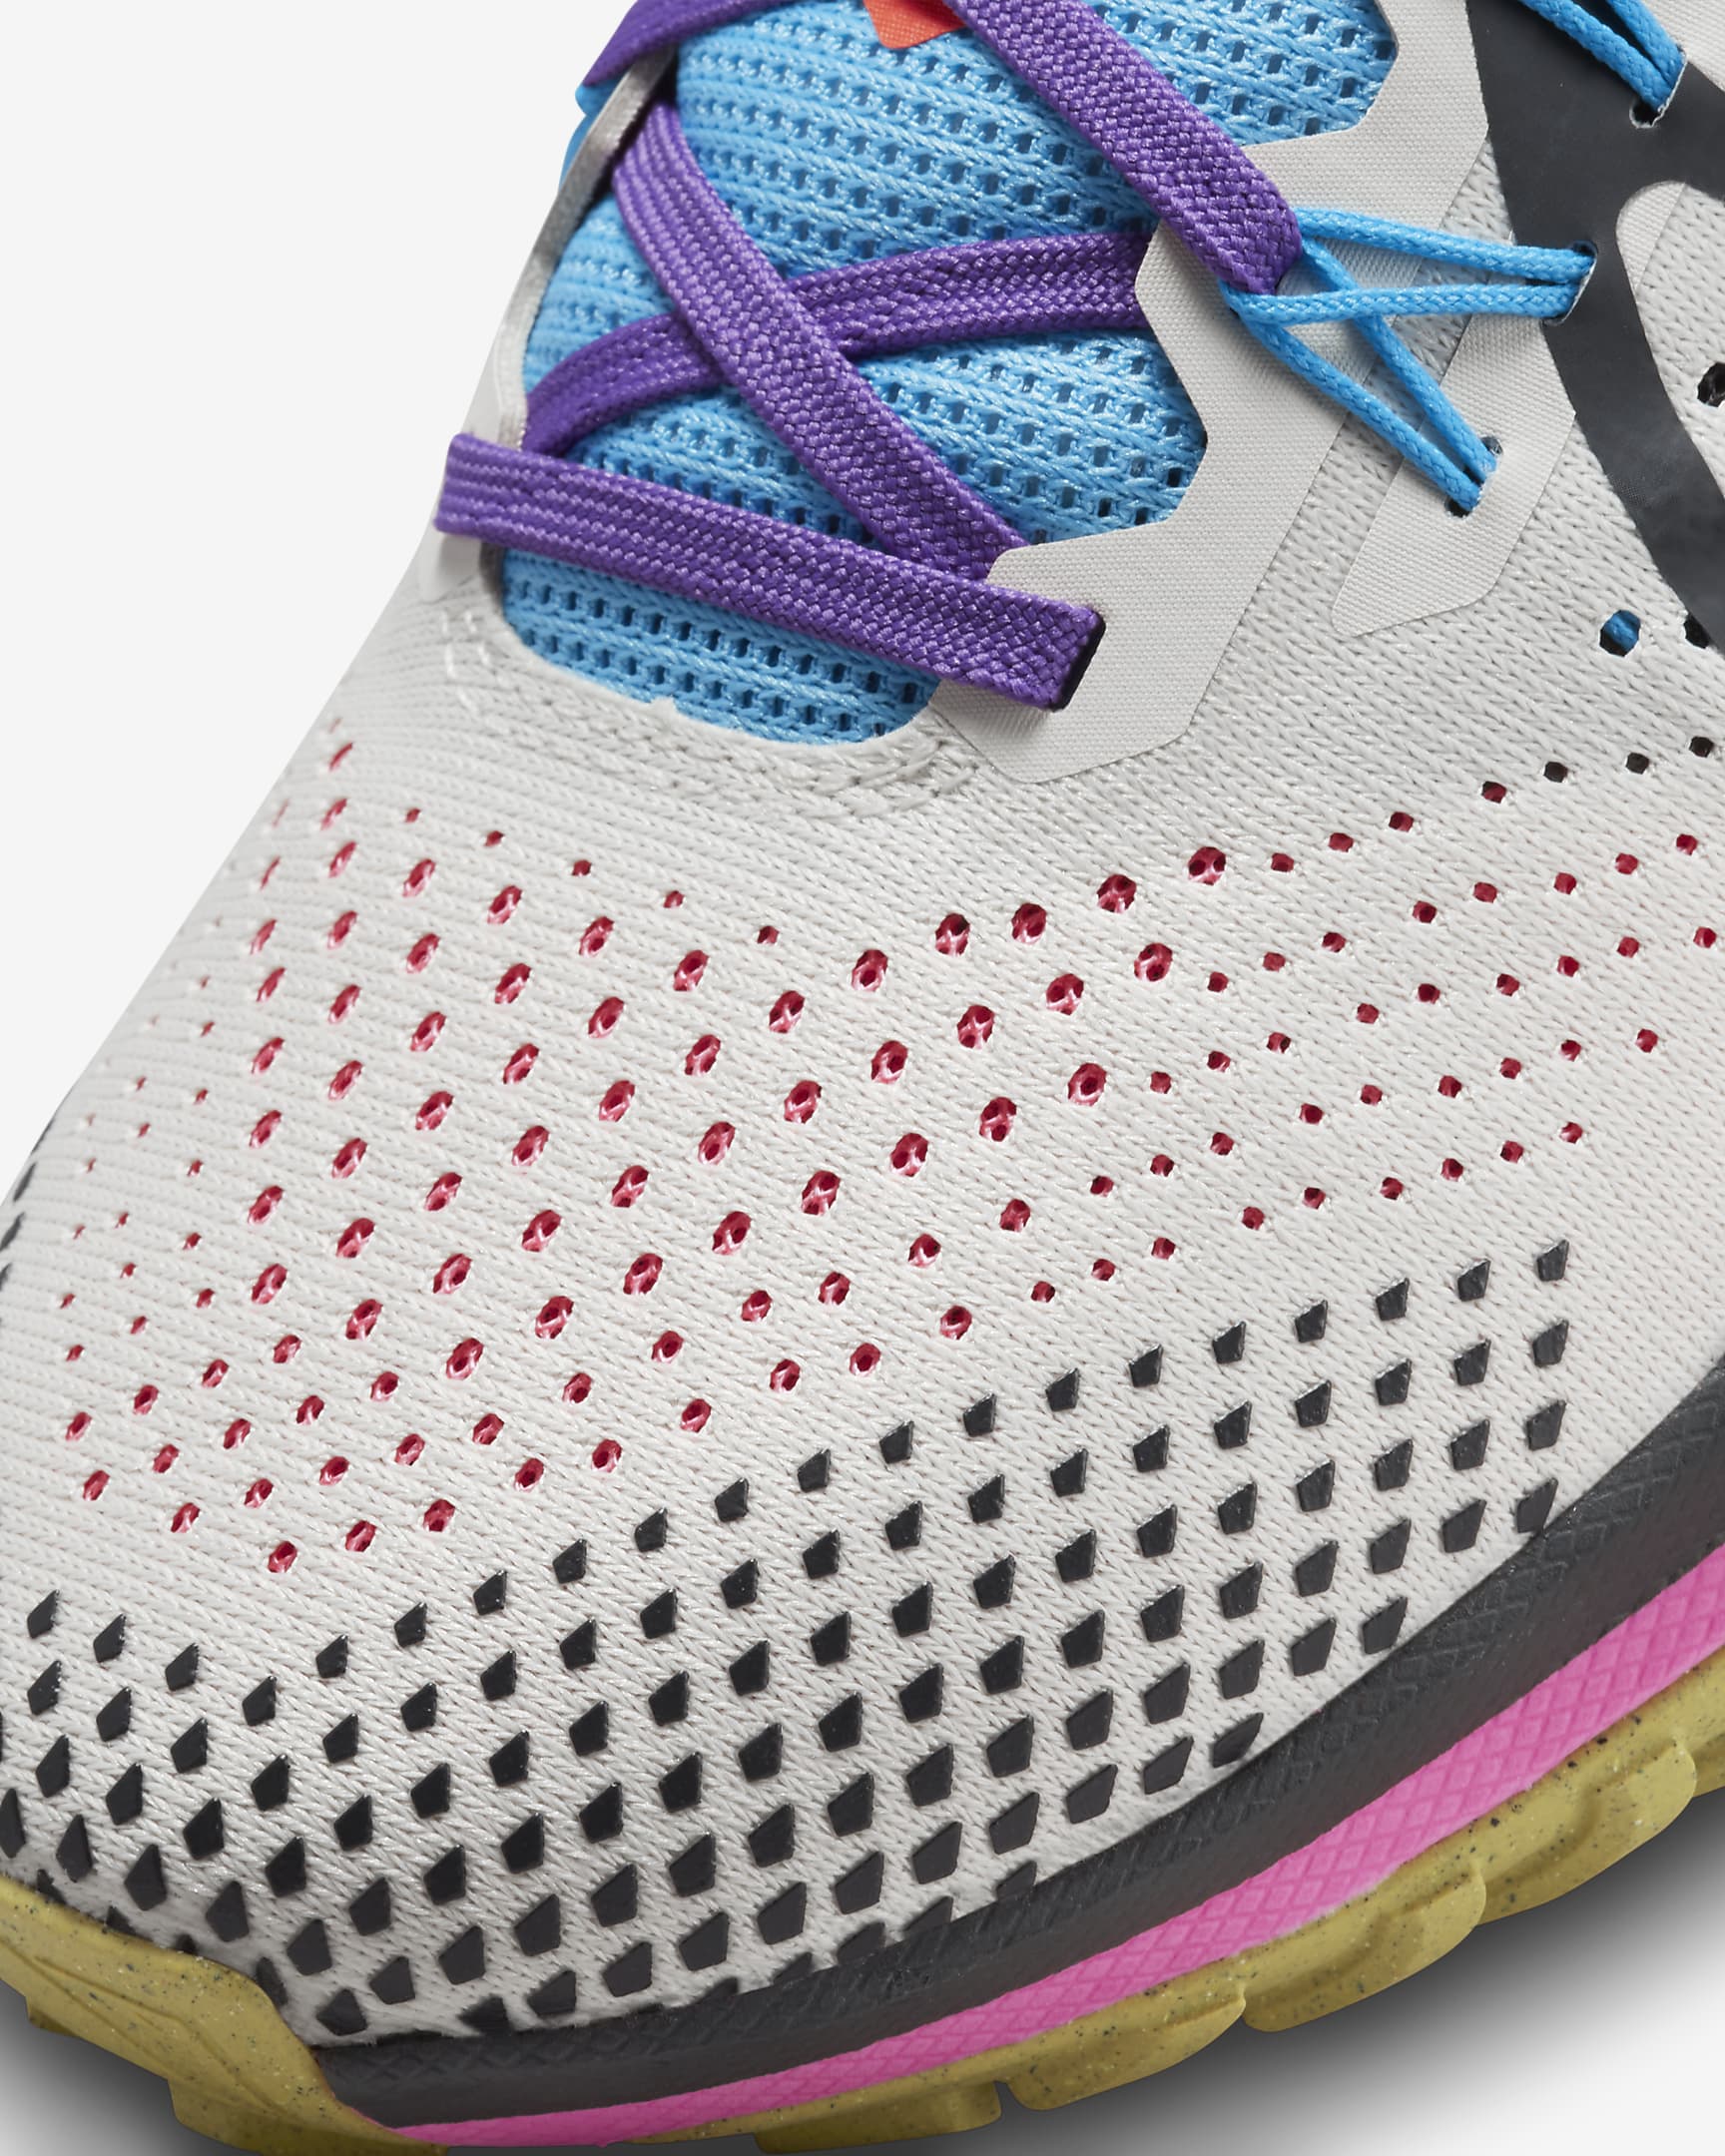 Nike Pegasus Trail 4 Women's Trail Running Shoes - Light Orewood Brown/Blue Lightning/Pink Spell/Dark Smoke Grey